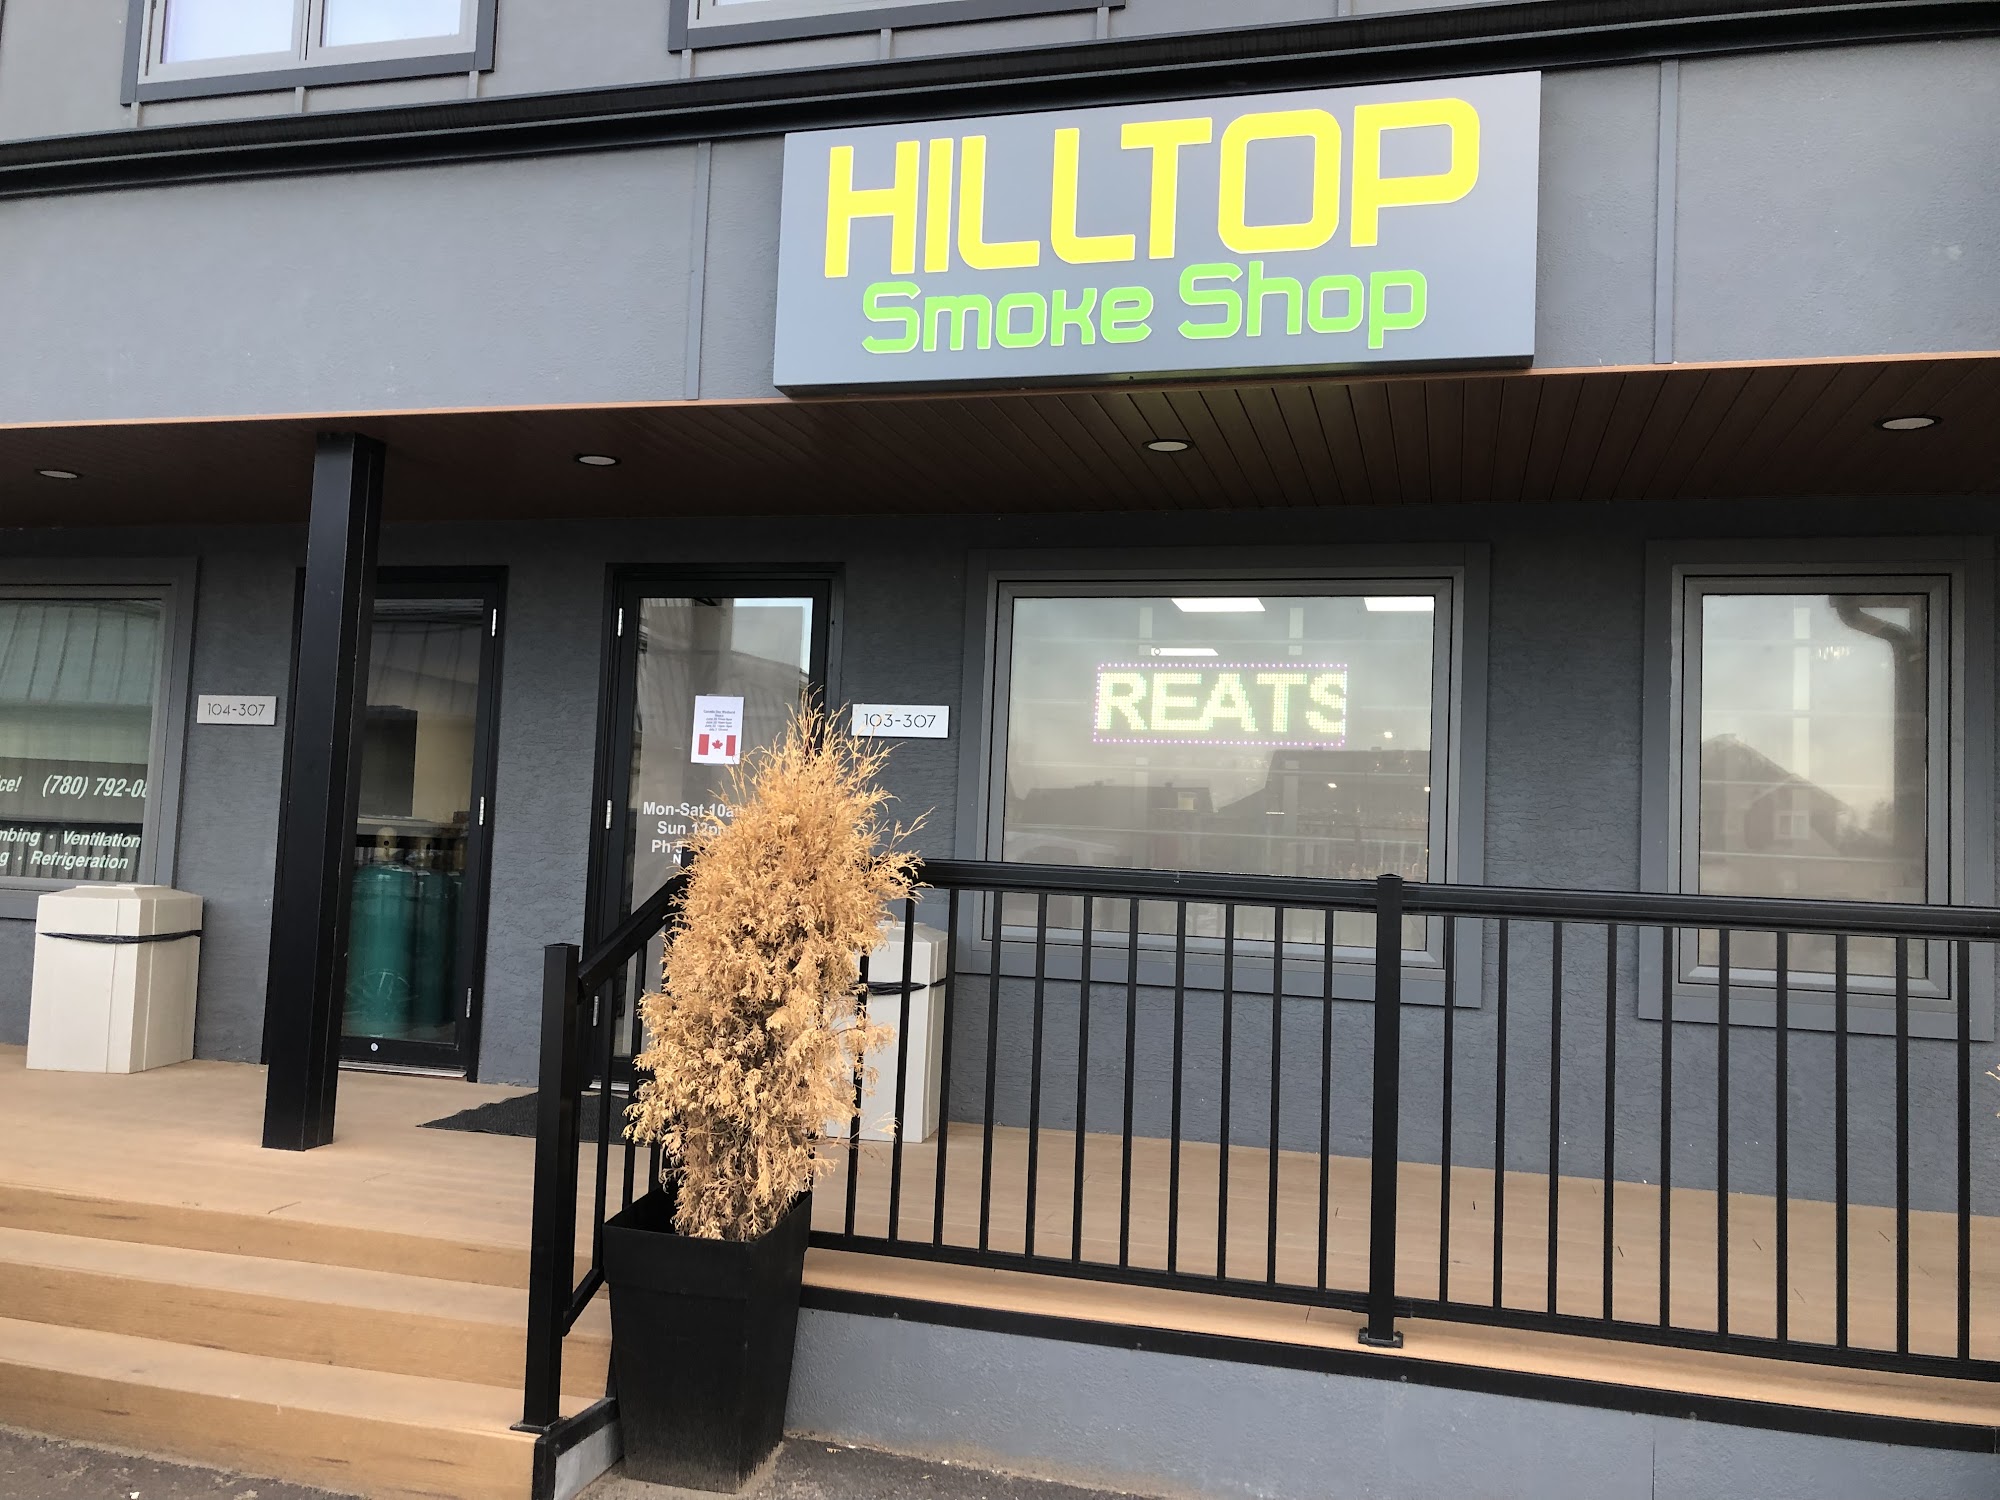 Hilltop smoke shop Ltd